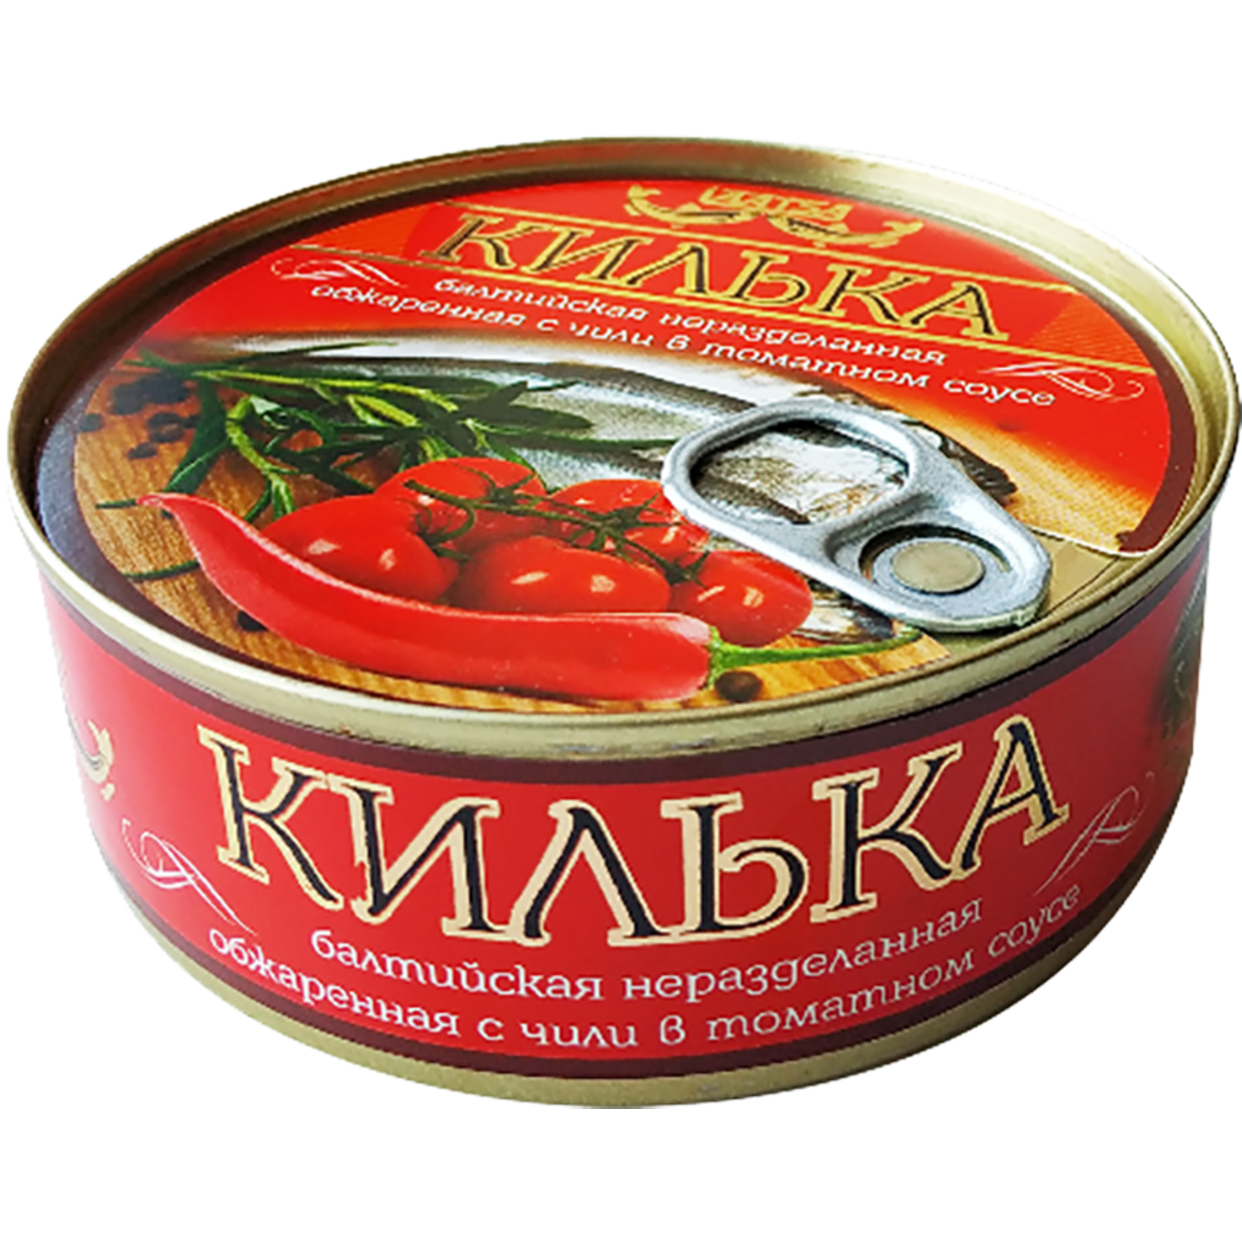 Килька обжареная, с чили, в томатном соусе, Laatsa, 240 г по акции в Пятерочке